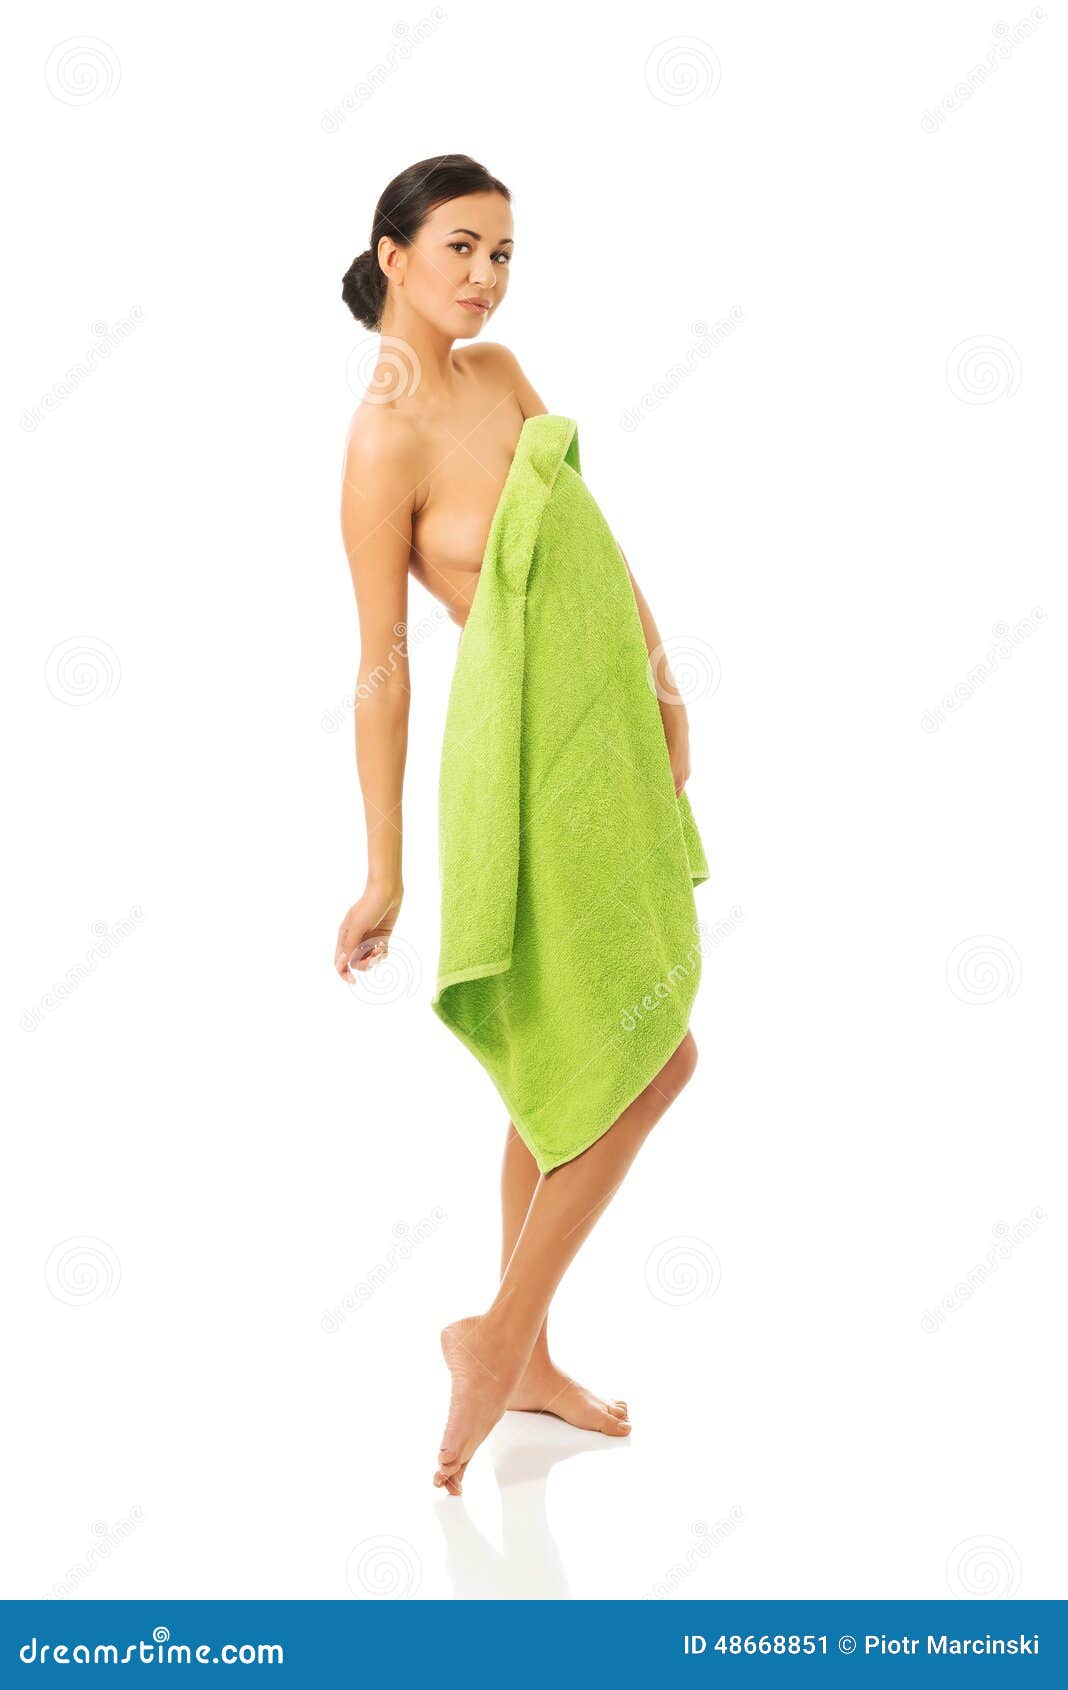 Ходит в полотенце. Девушка обернутая в полотенце. Девушка в одном полотенце. Девушка завернутая в полотенце. Девушка в зеленом полотенце.